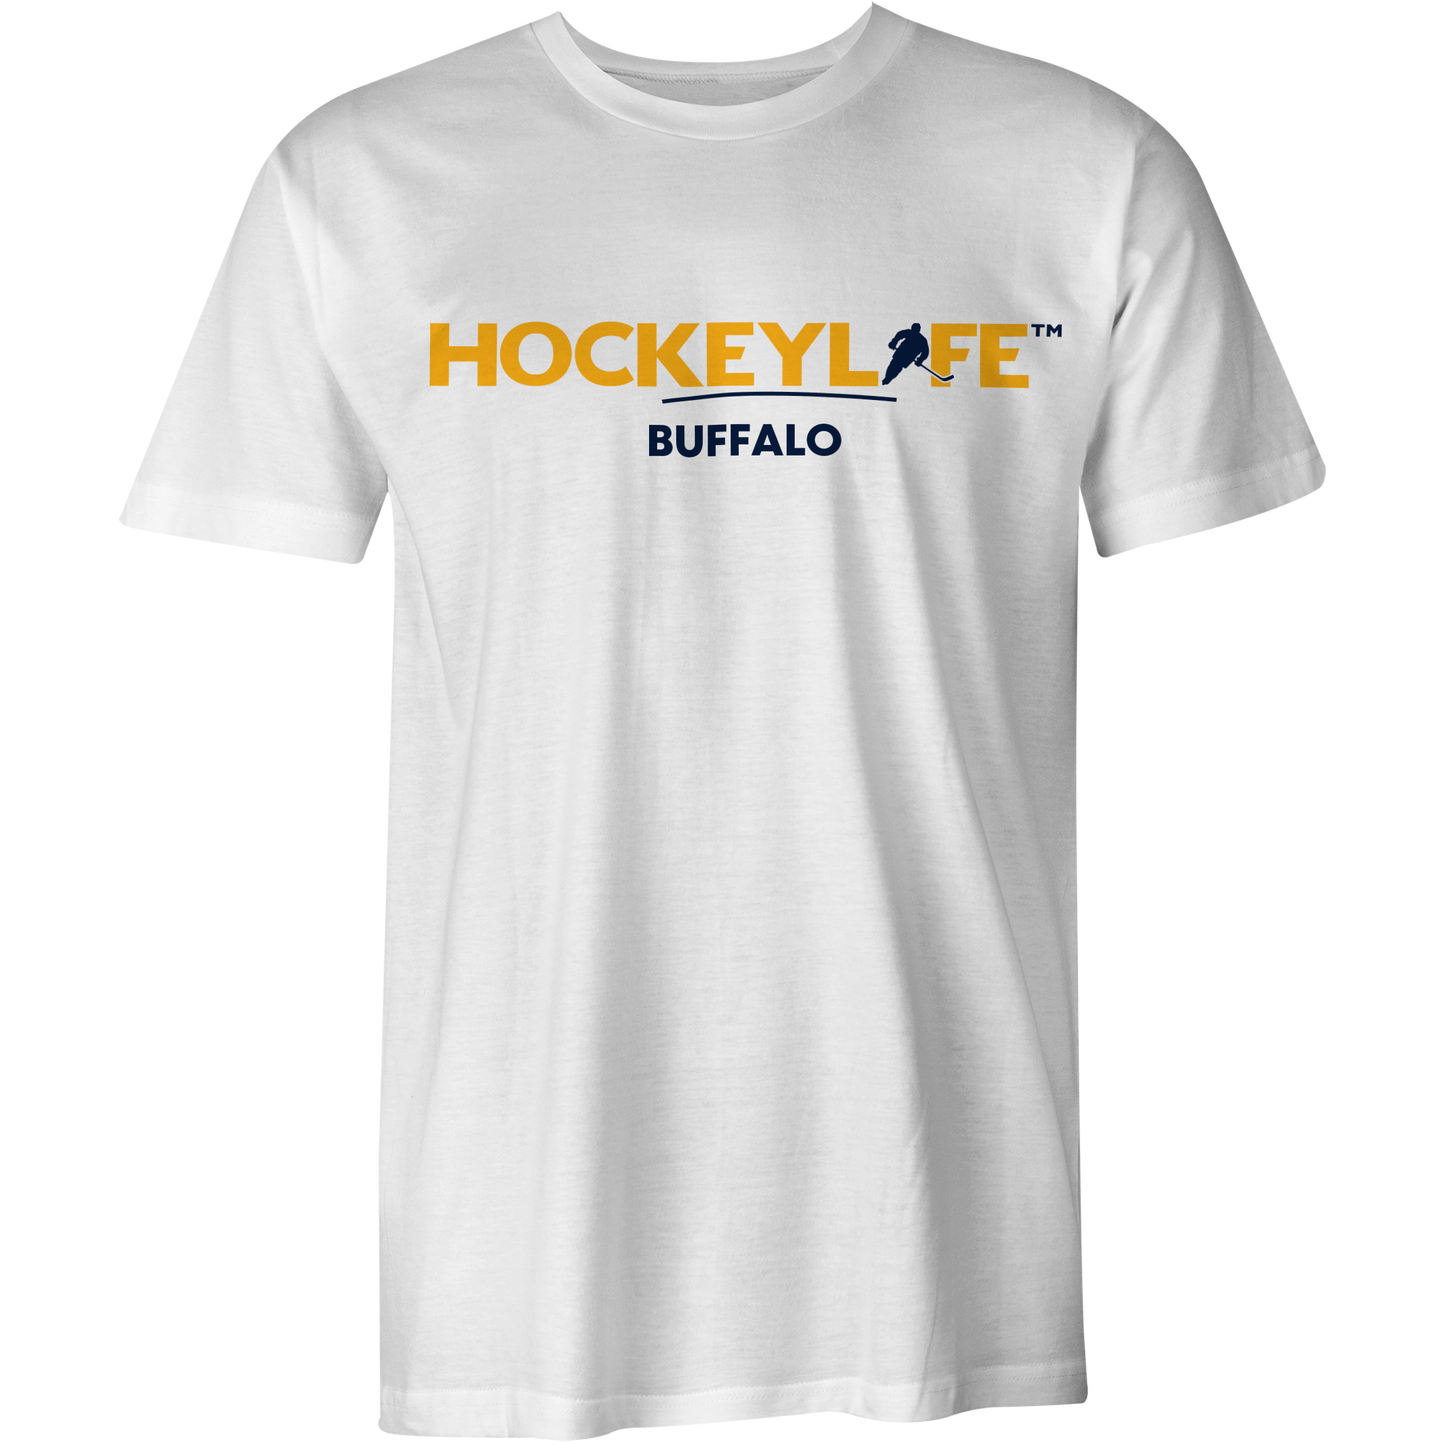 HockeyLife Buffalo Tee Shirt